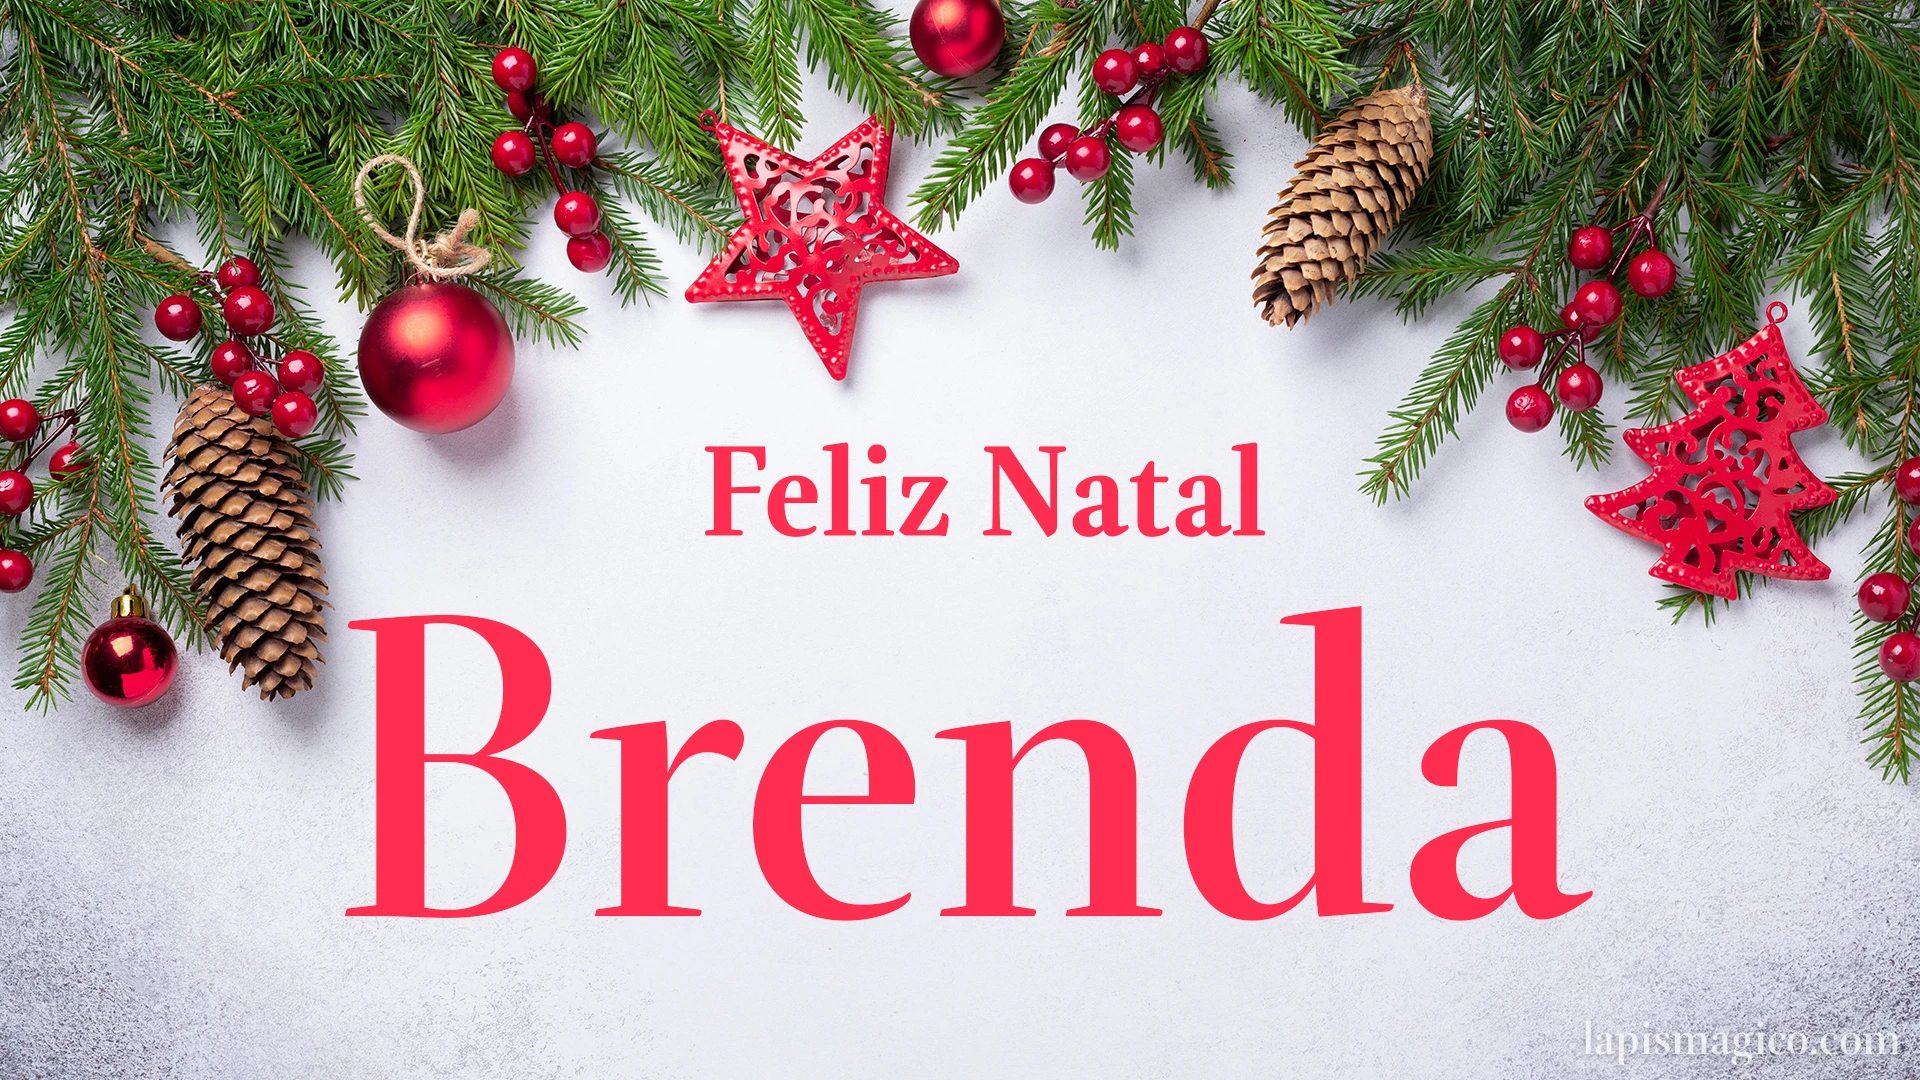 Oh Brenda, cinco postais de Feliz Natal Postal com o teu nome